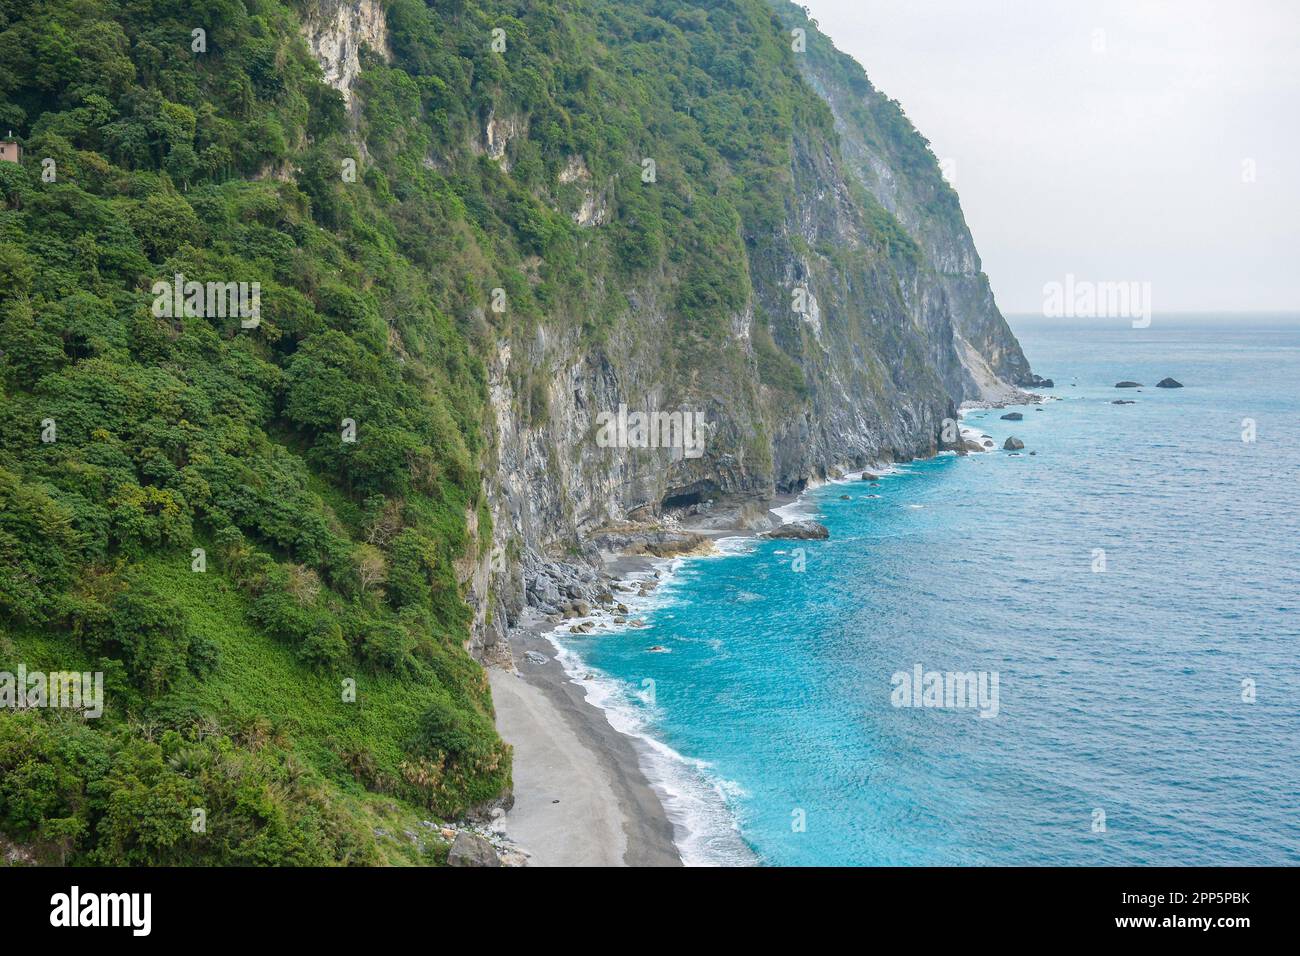 L'area panoramica della scogliera di CH'ing-shui (scogliera di Qingshui) e le scogliere costiere di Taiwan con acque turchesi e smeraldo del mare nel Parco Nazionale di Taroko, Taiwan Foto Stock